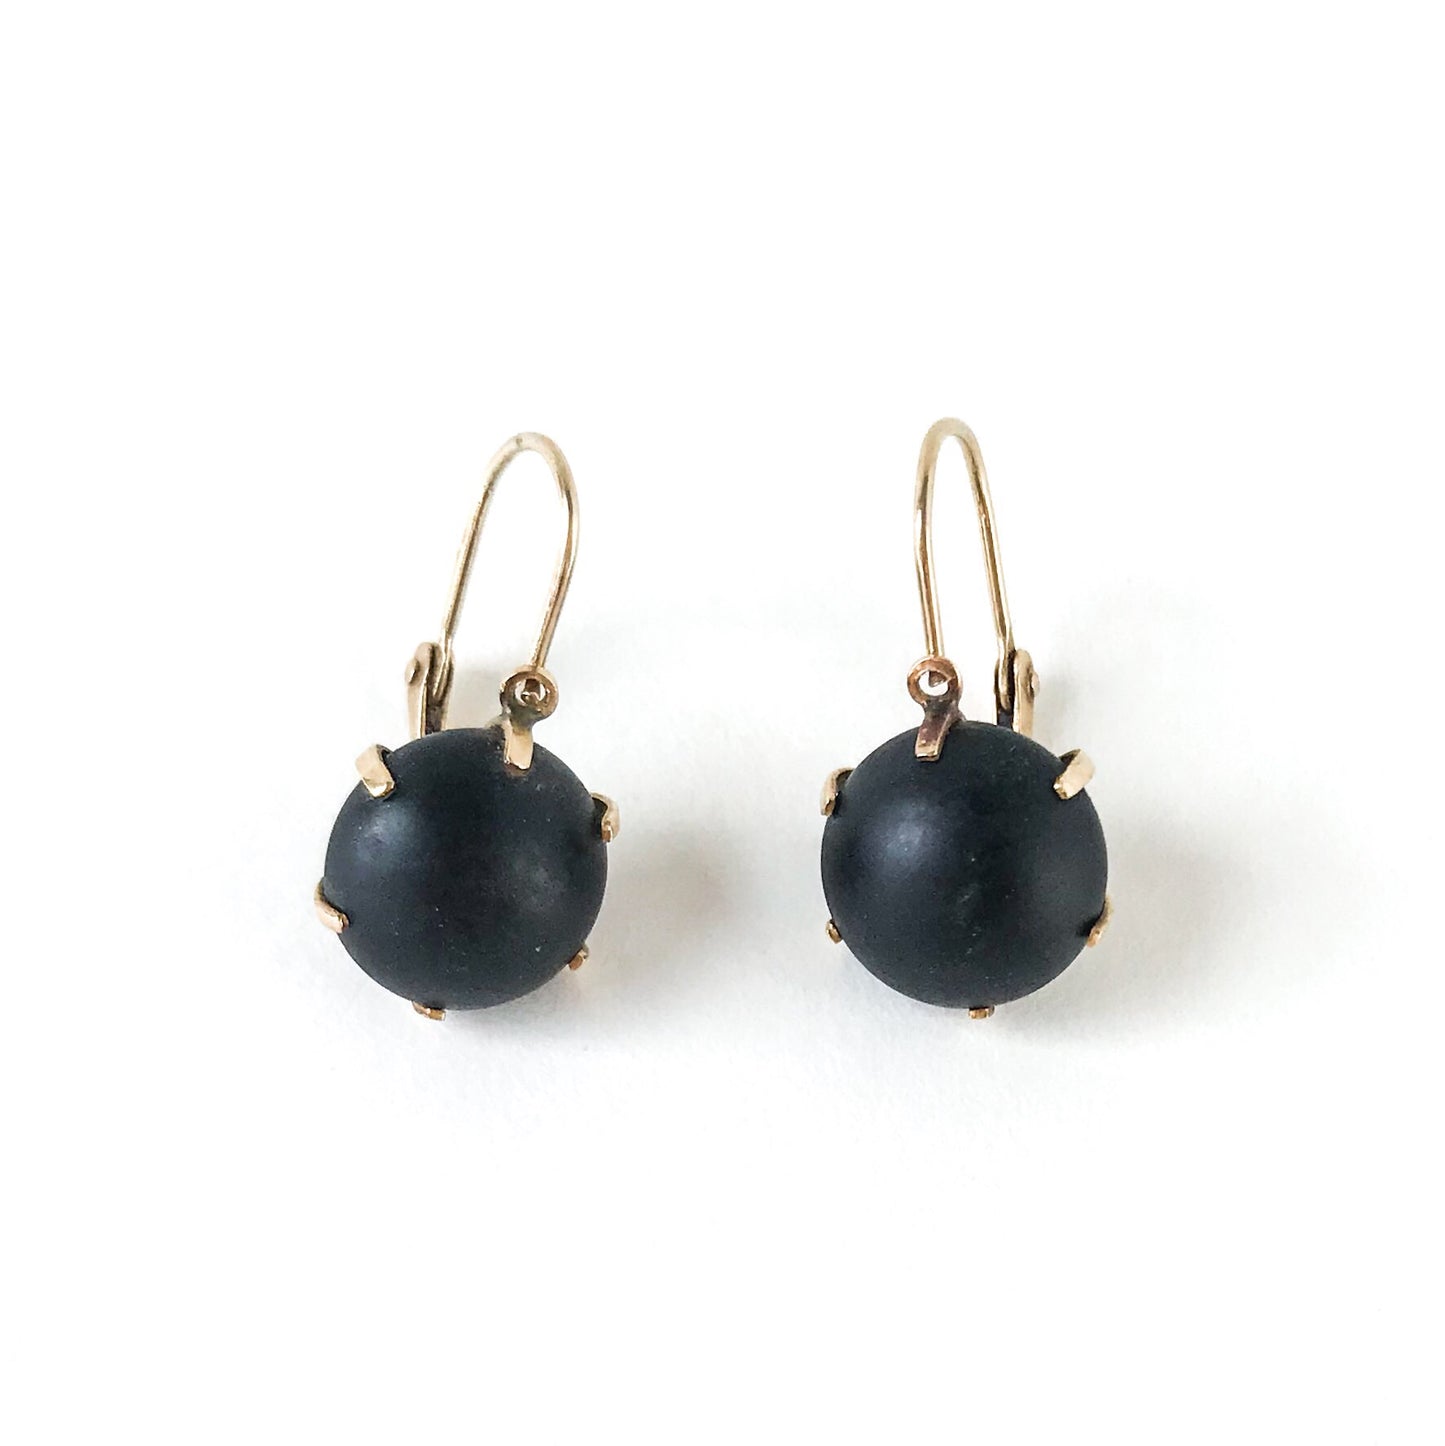 SOLD-Victorian Onyx Drop Earrings 14k c. 1890